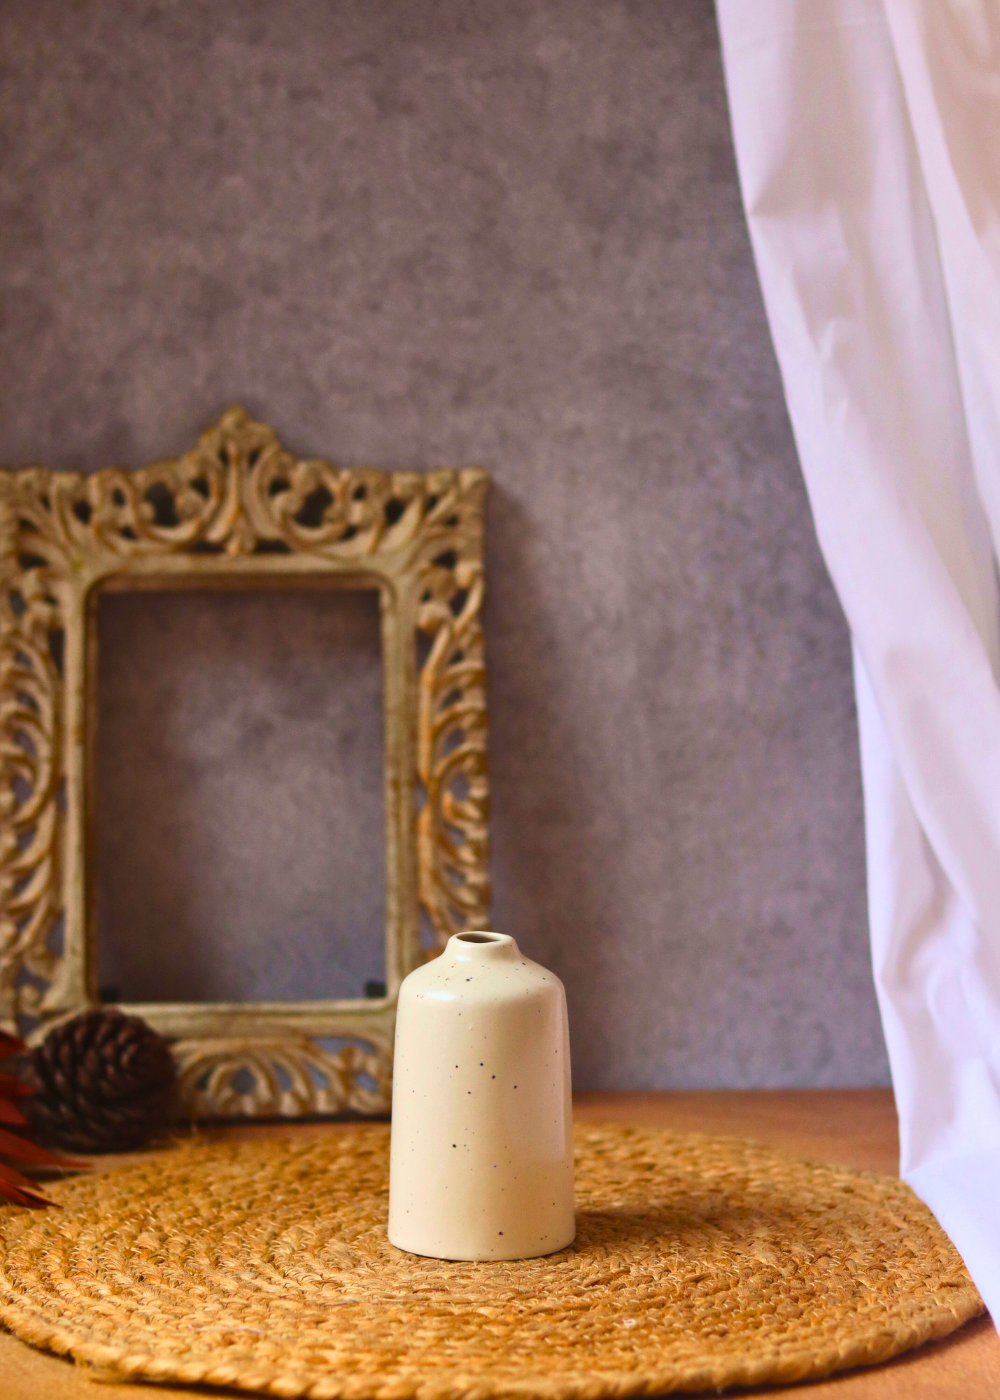 cream bud vase with premium cream color